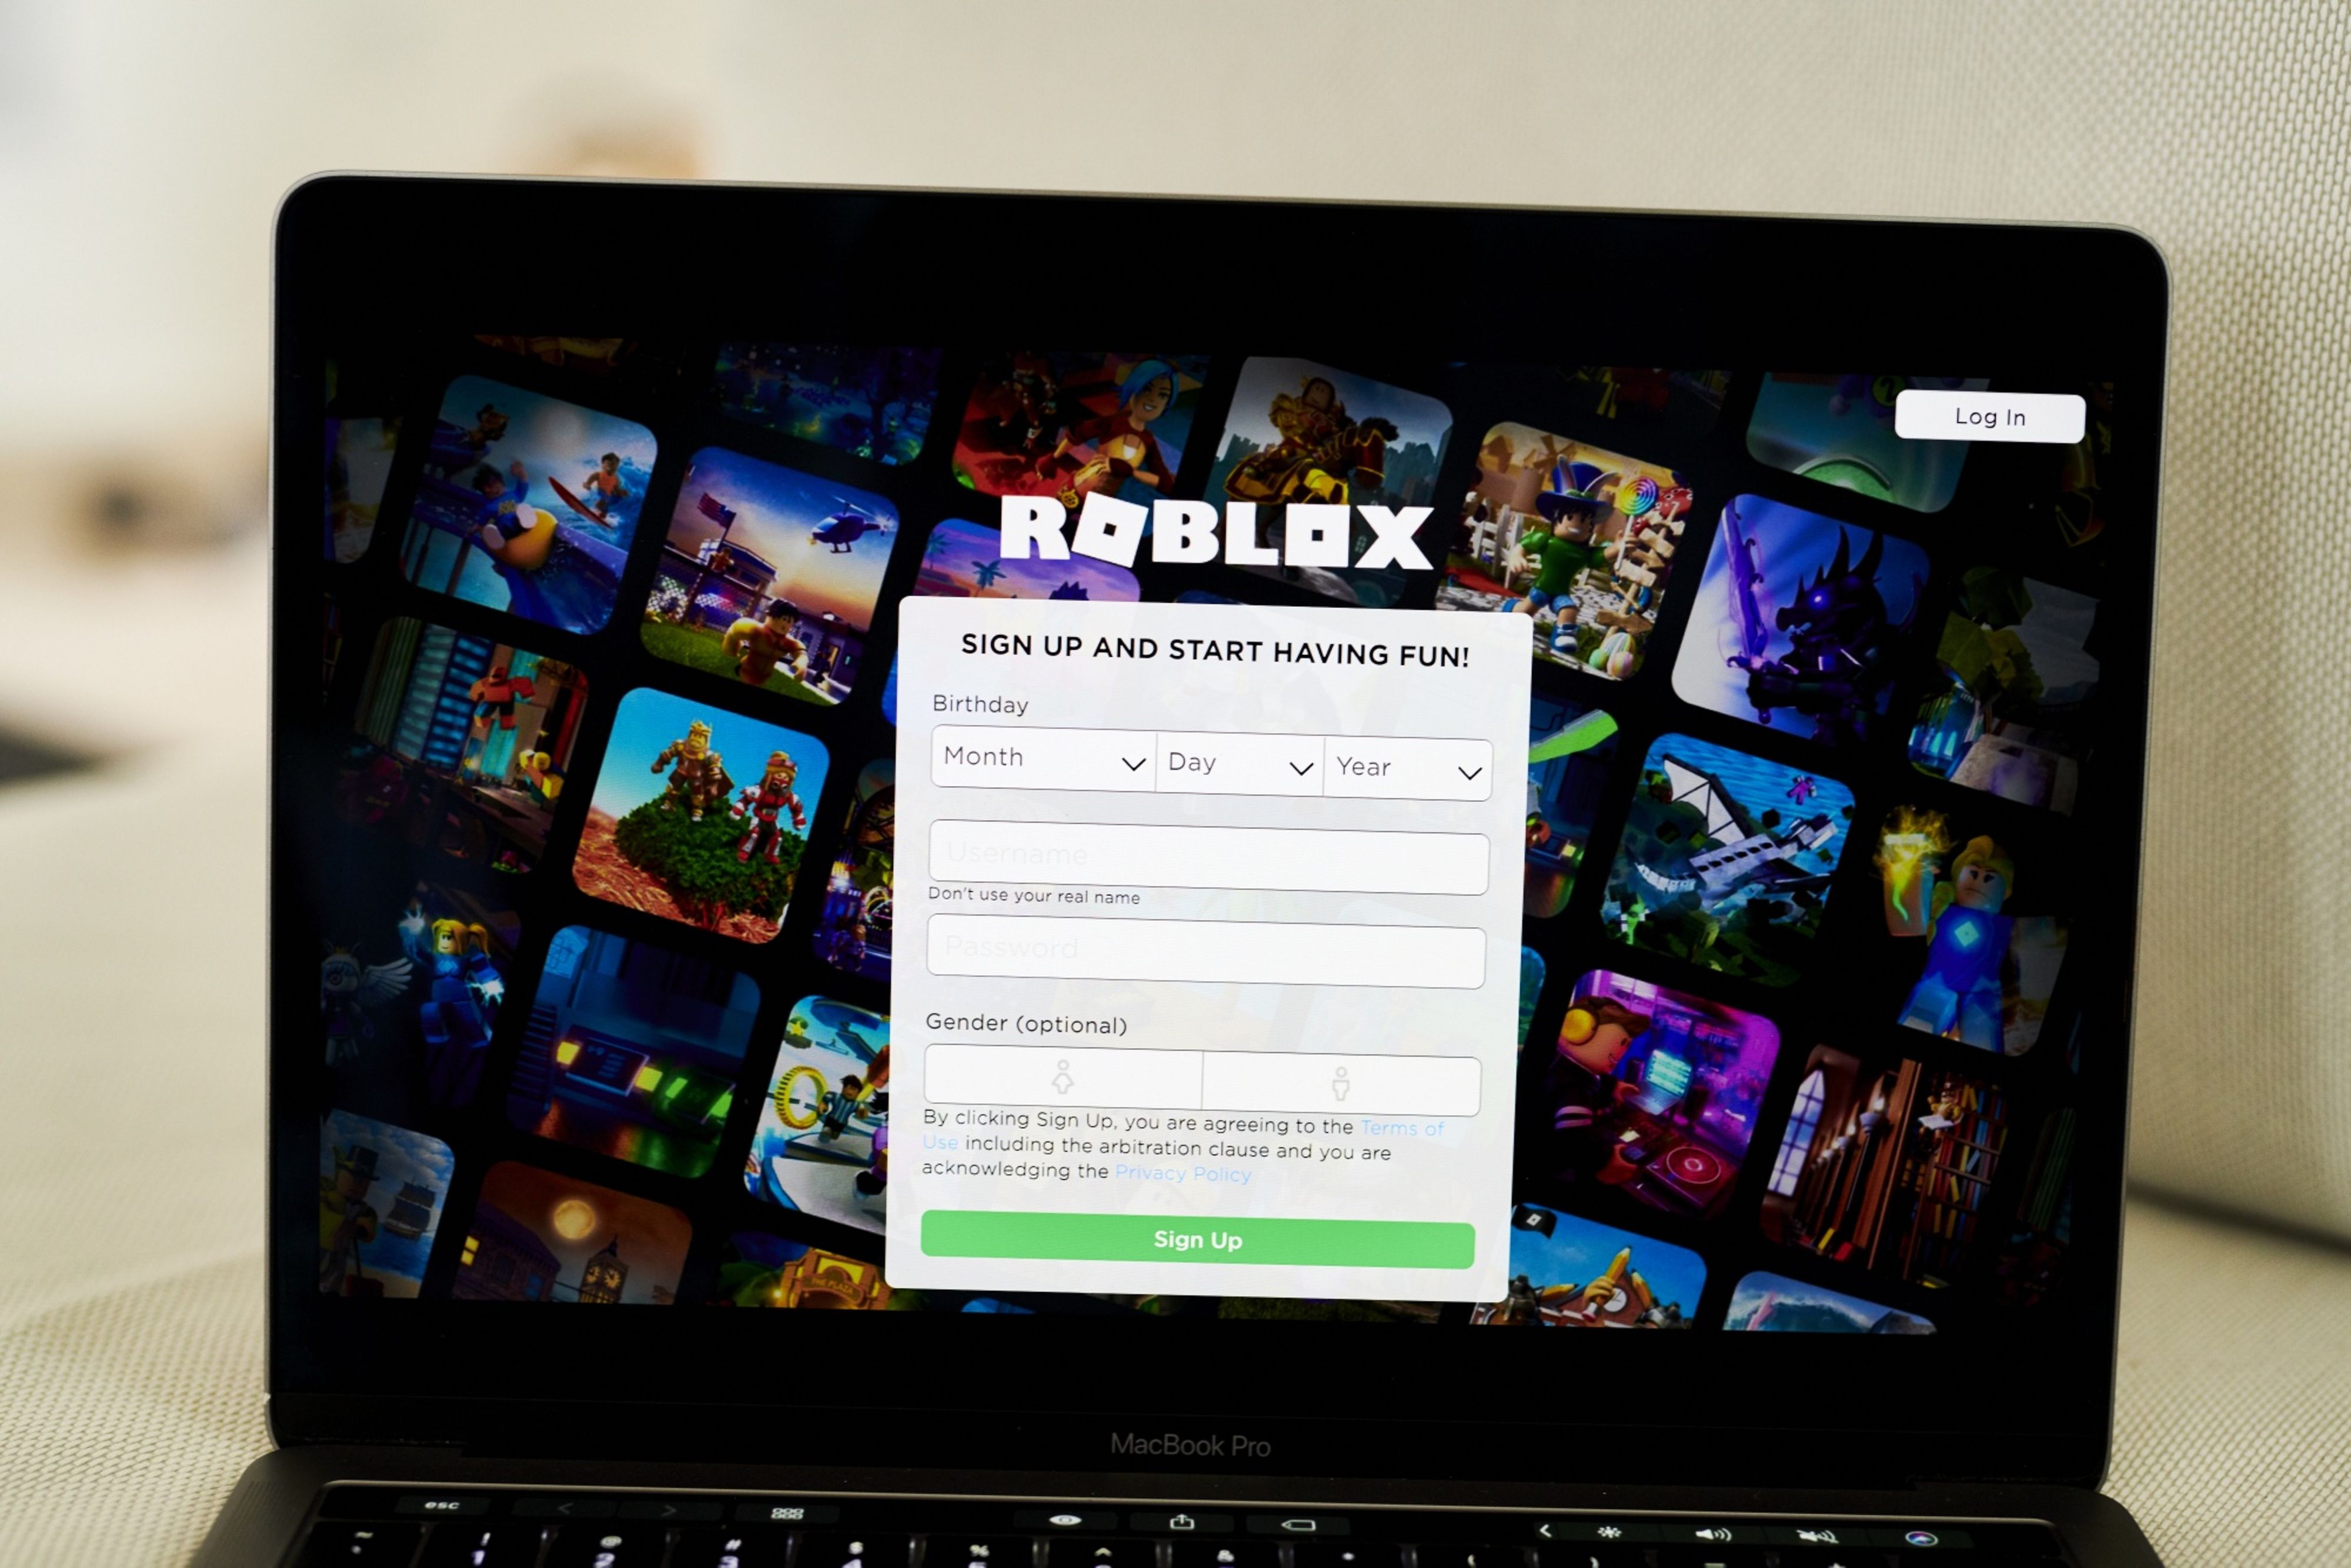 Roblox atinge 48 milhões de jogadores ativos por dia